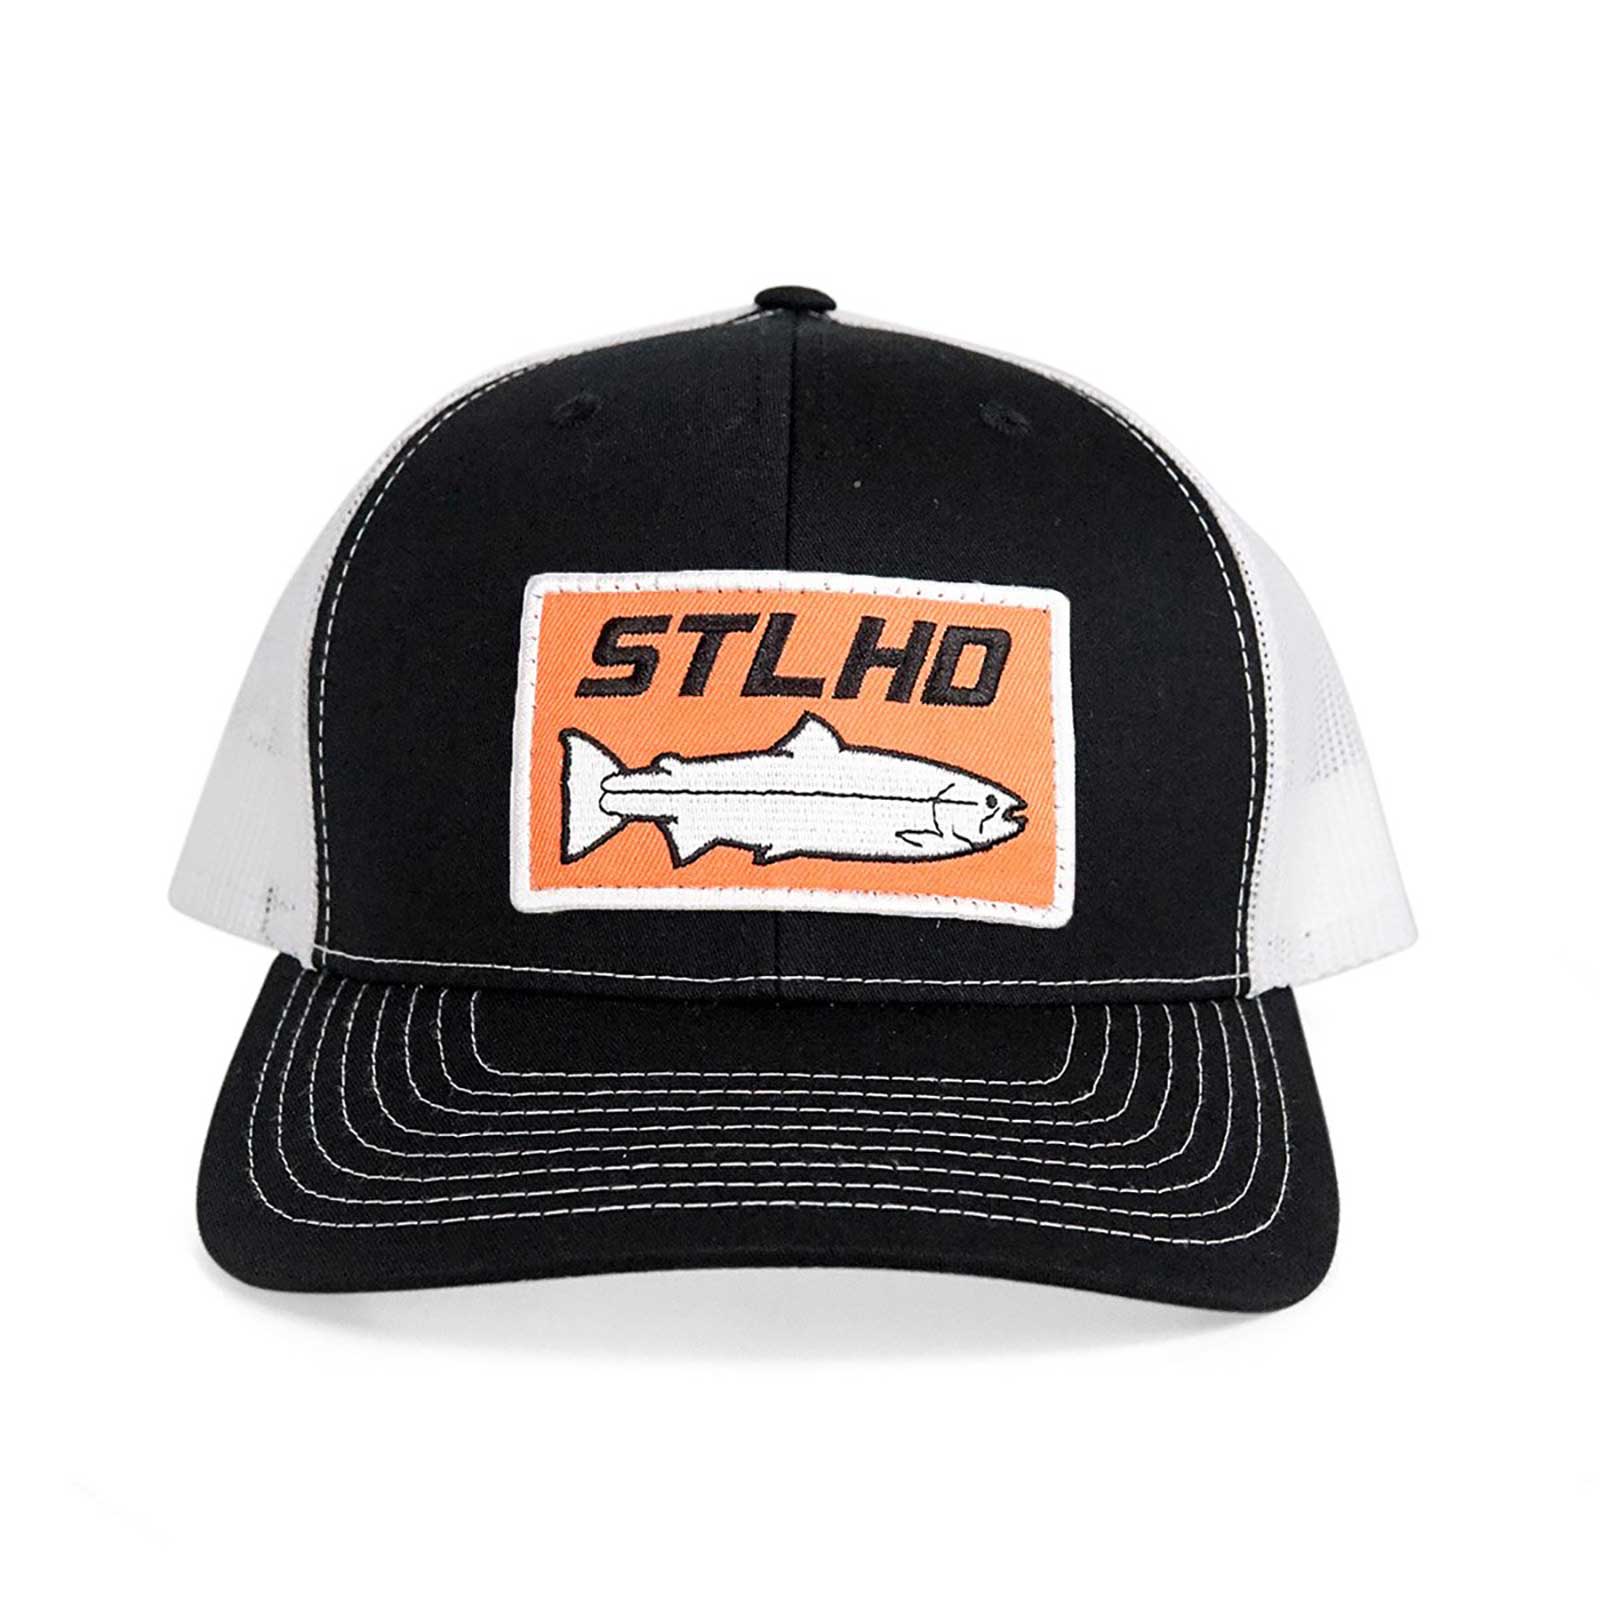 STLHD Men's Standard Trucker Hat